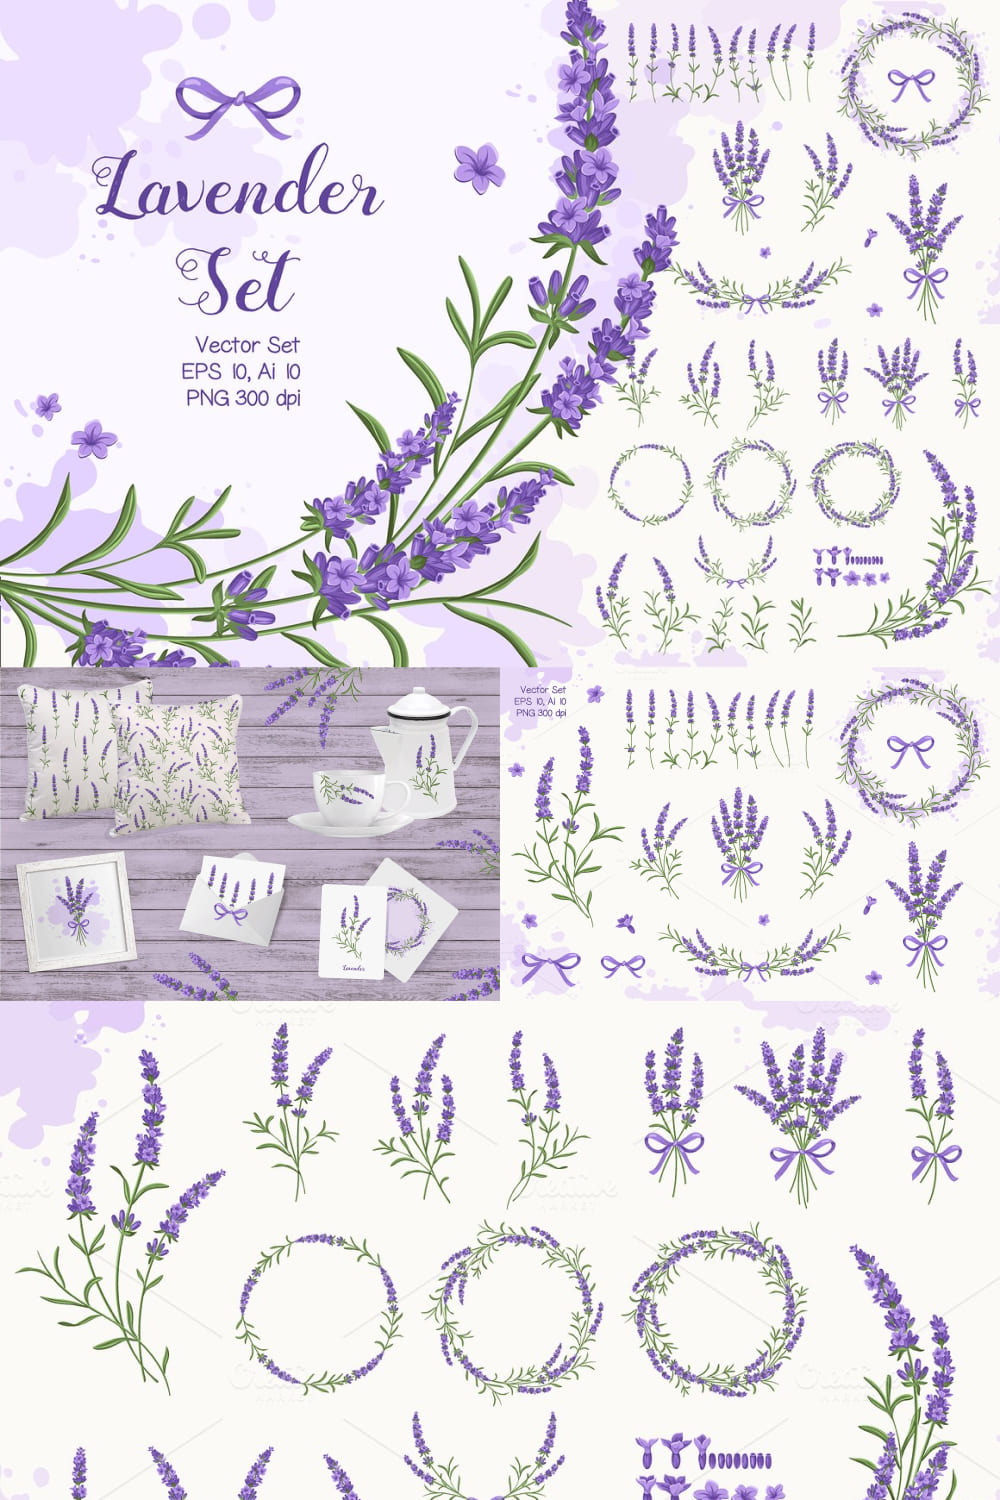 Lavender Set pinterest image.